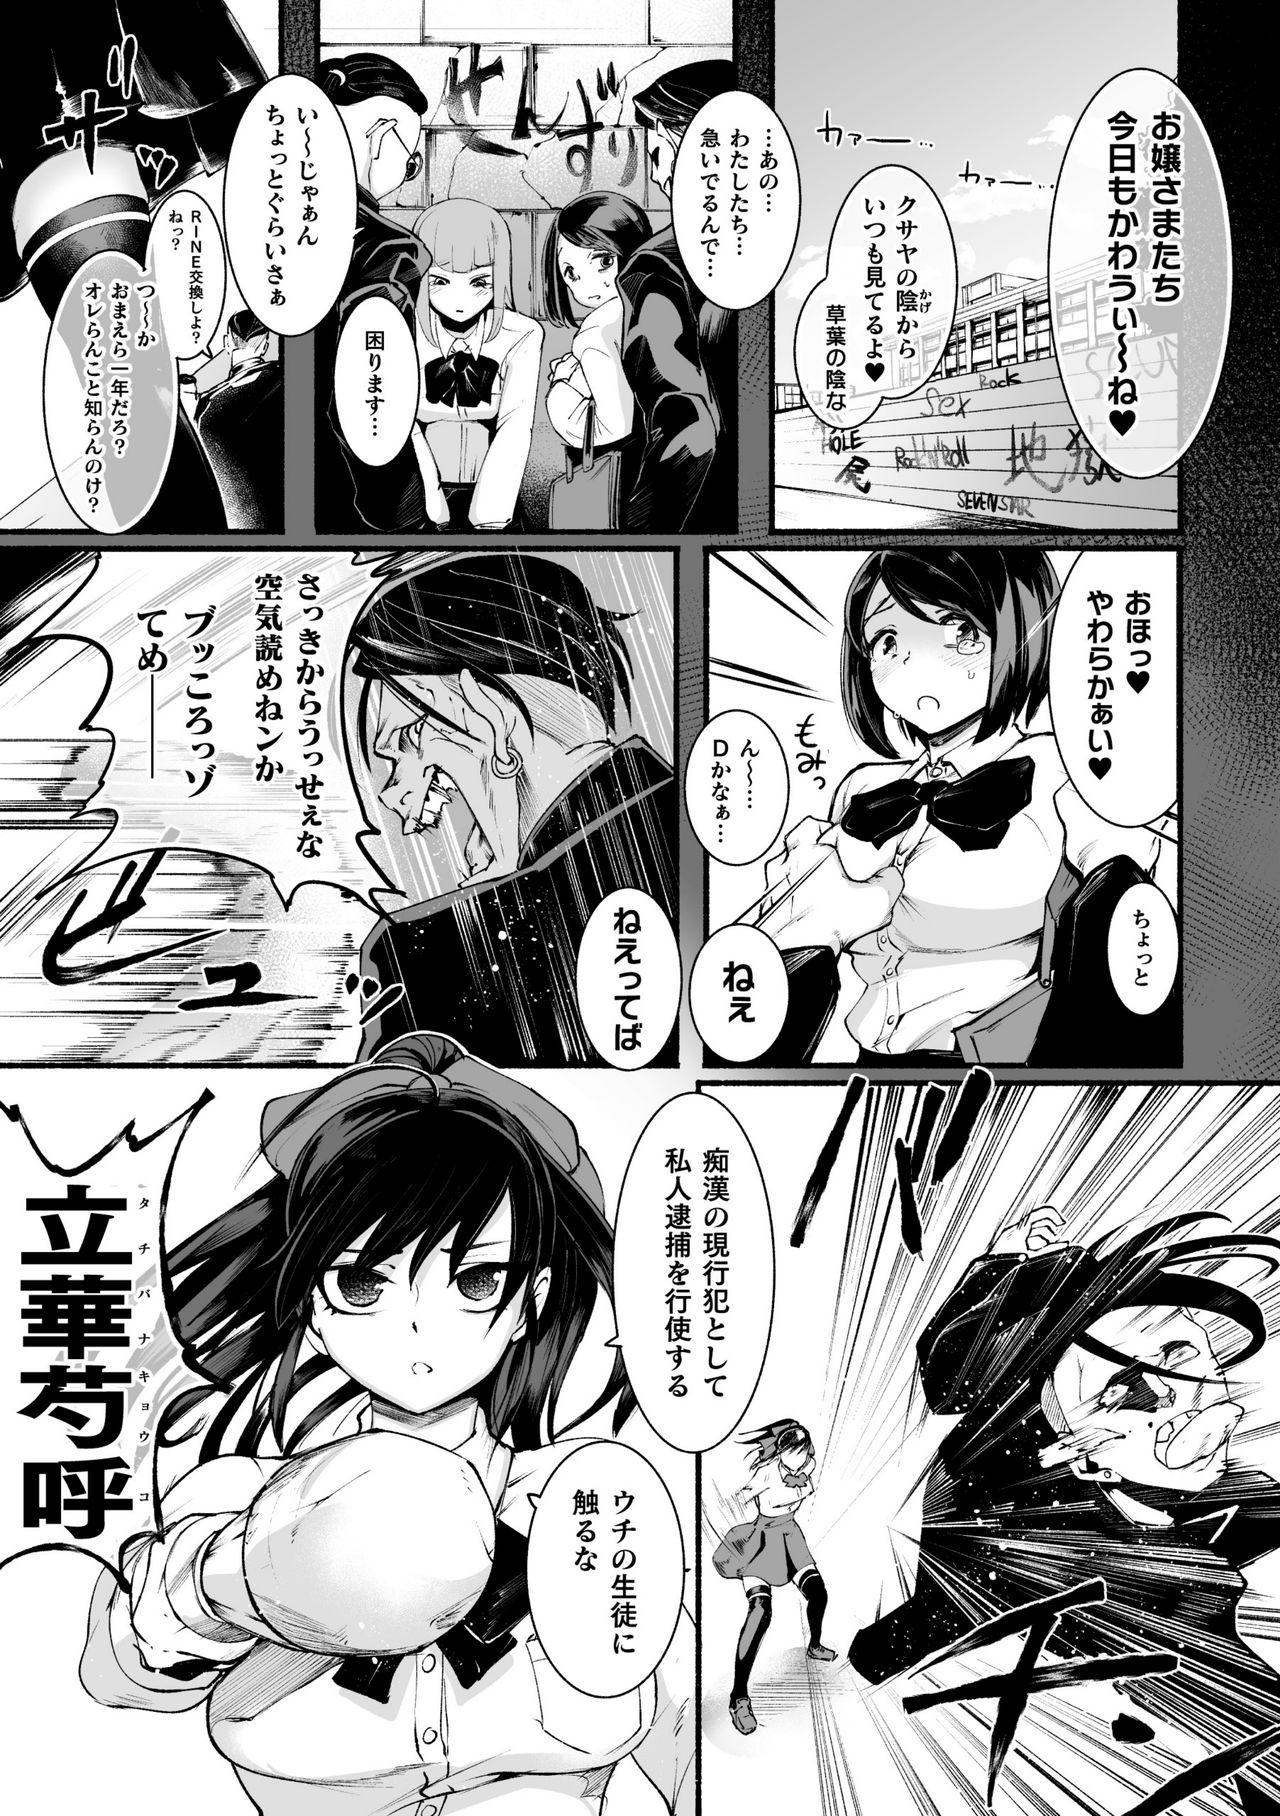 2D Comic Magazine Futanari bi ryona zako mesu bokki o hakai ryōjoku vol.1 24